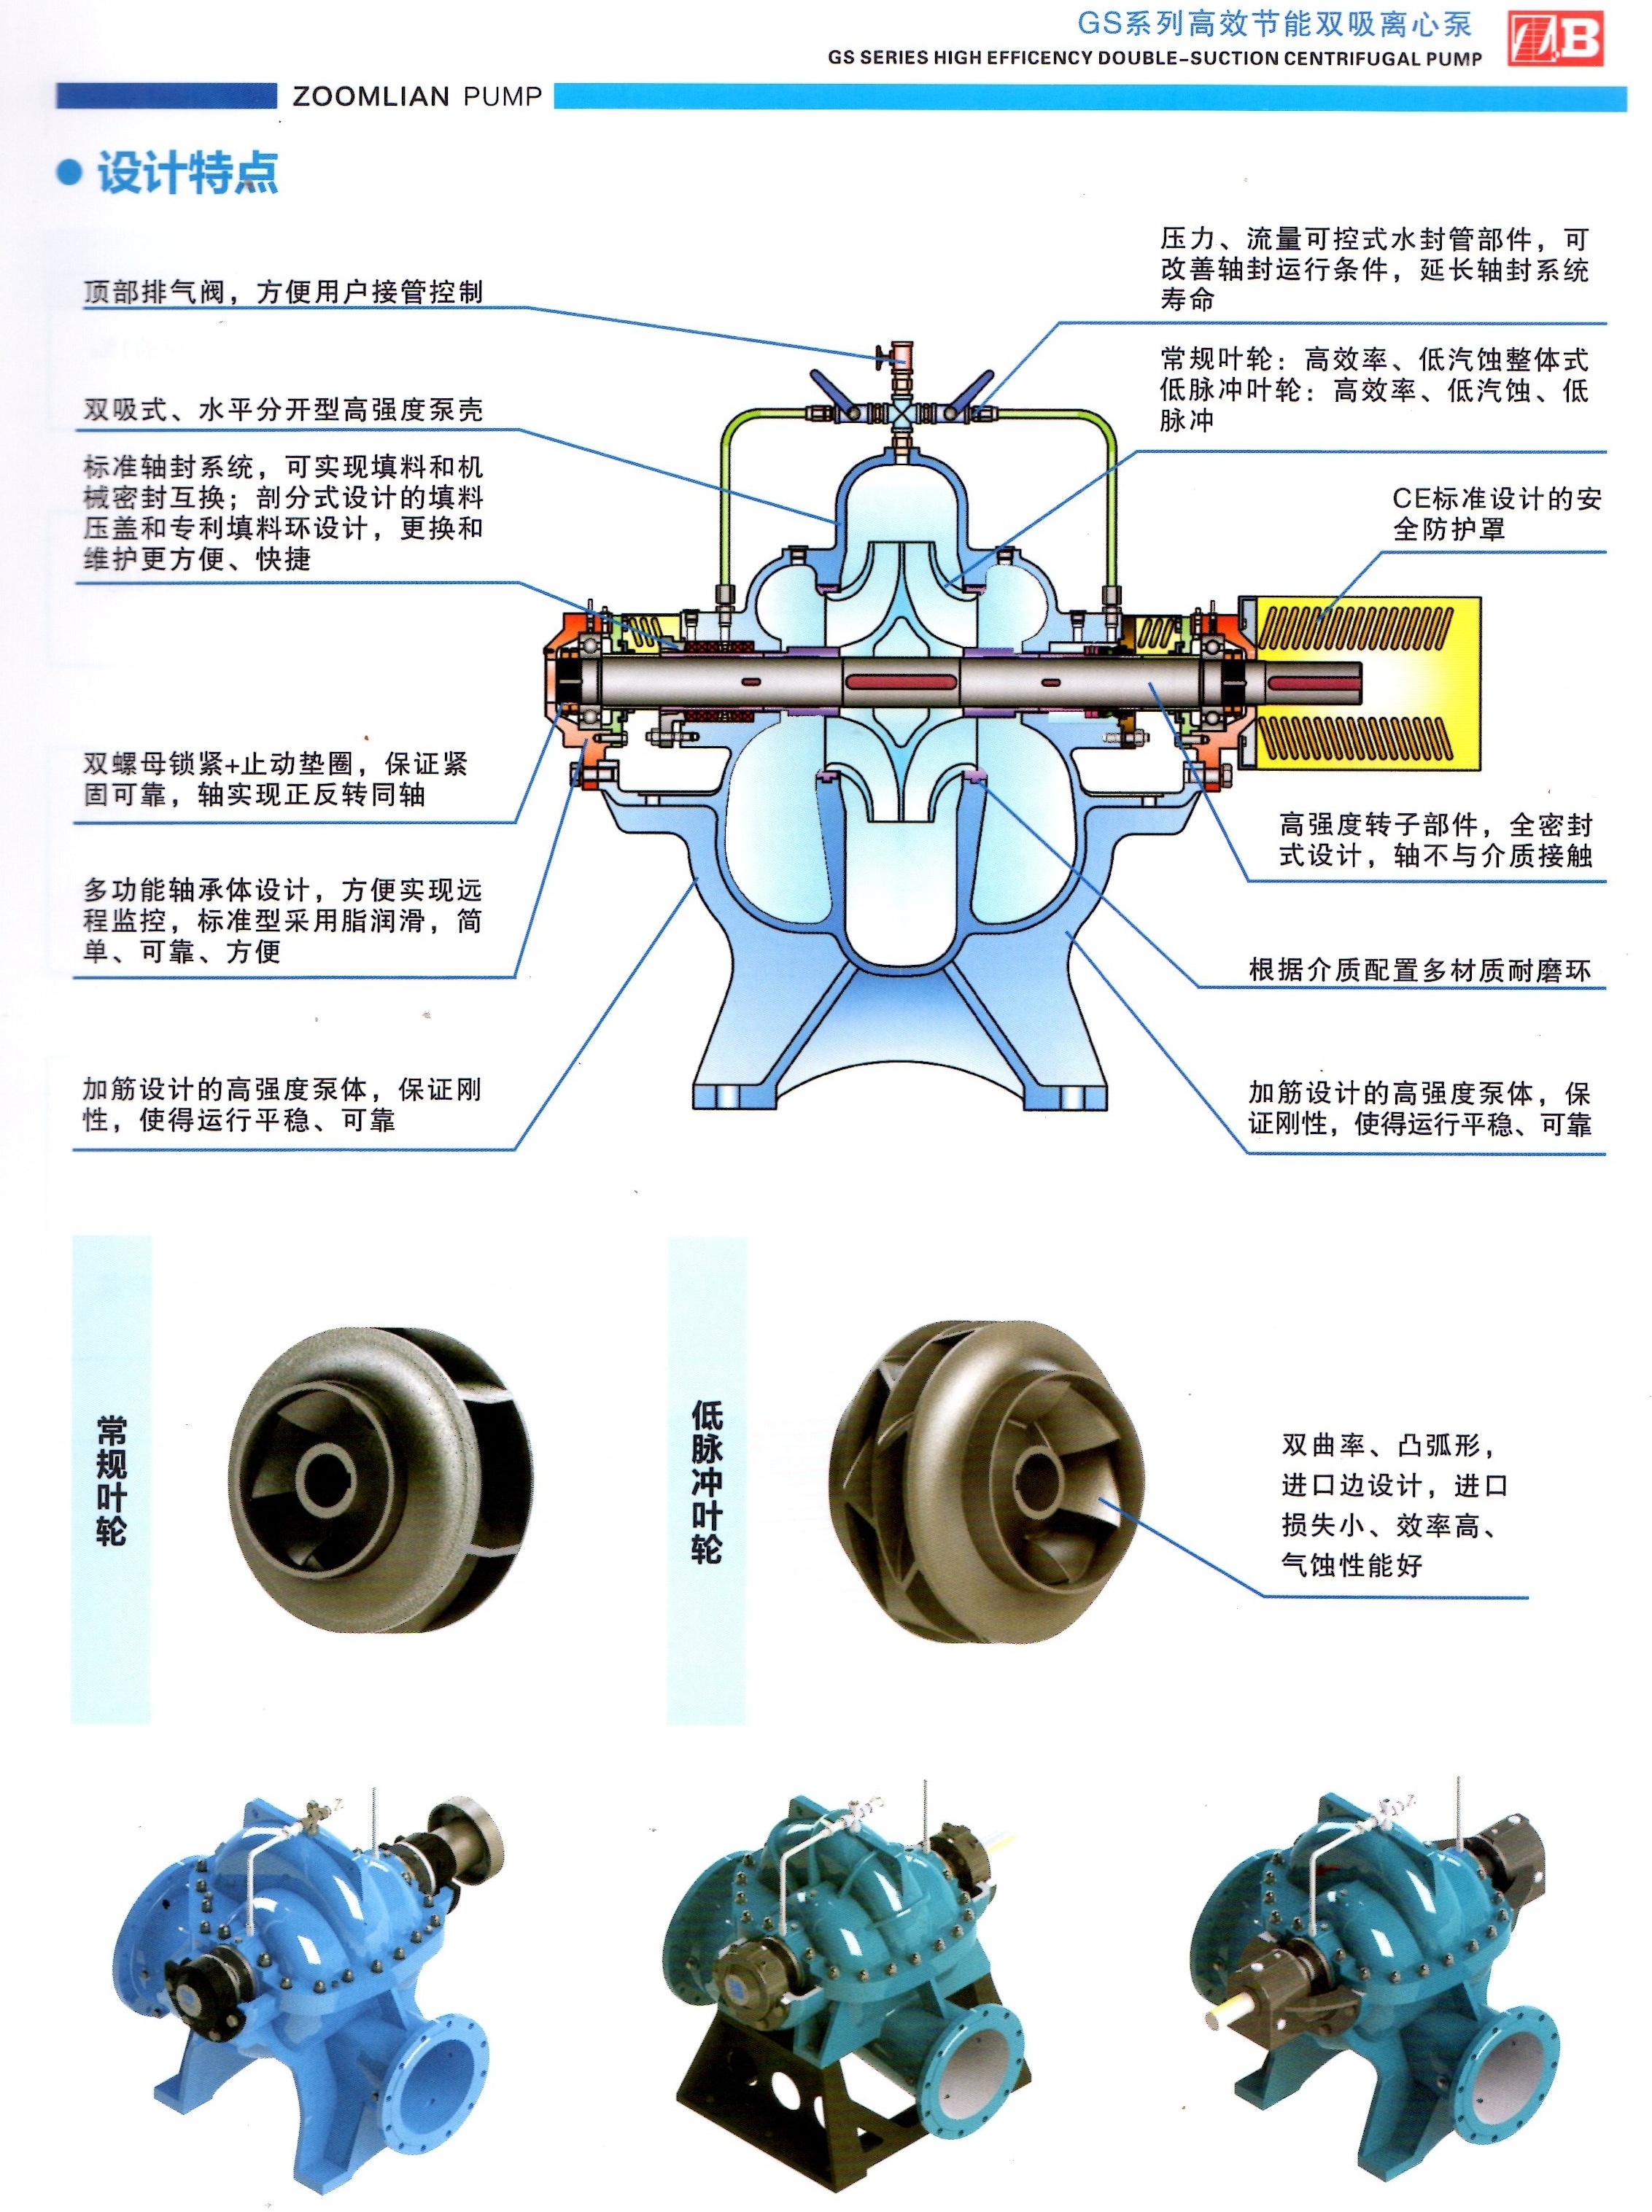 GS型双吸离心泵设计特点